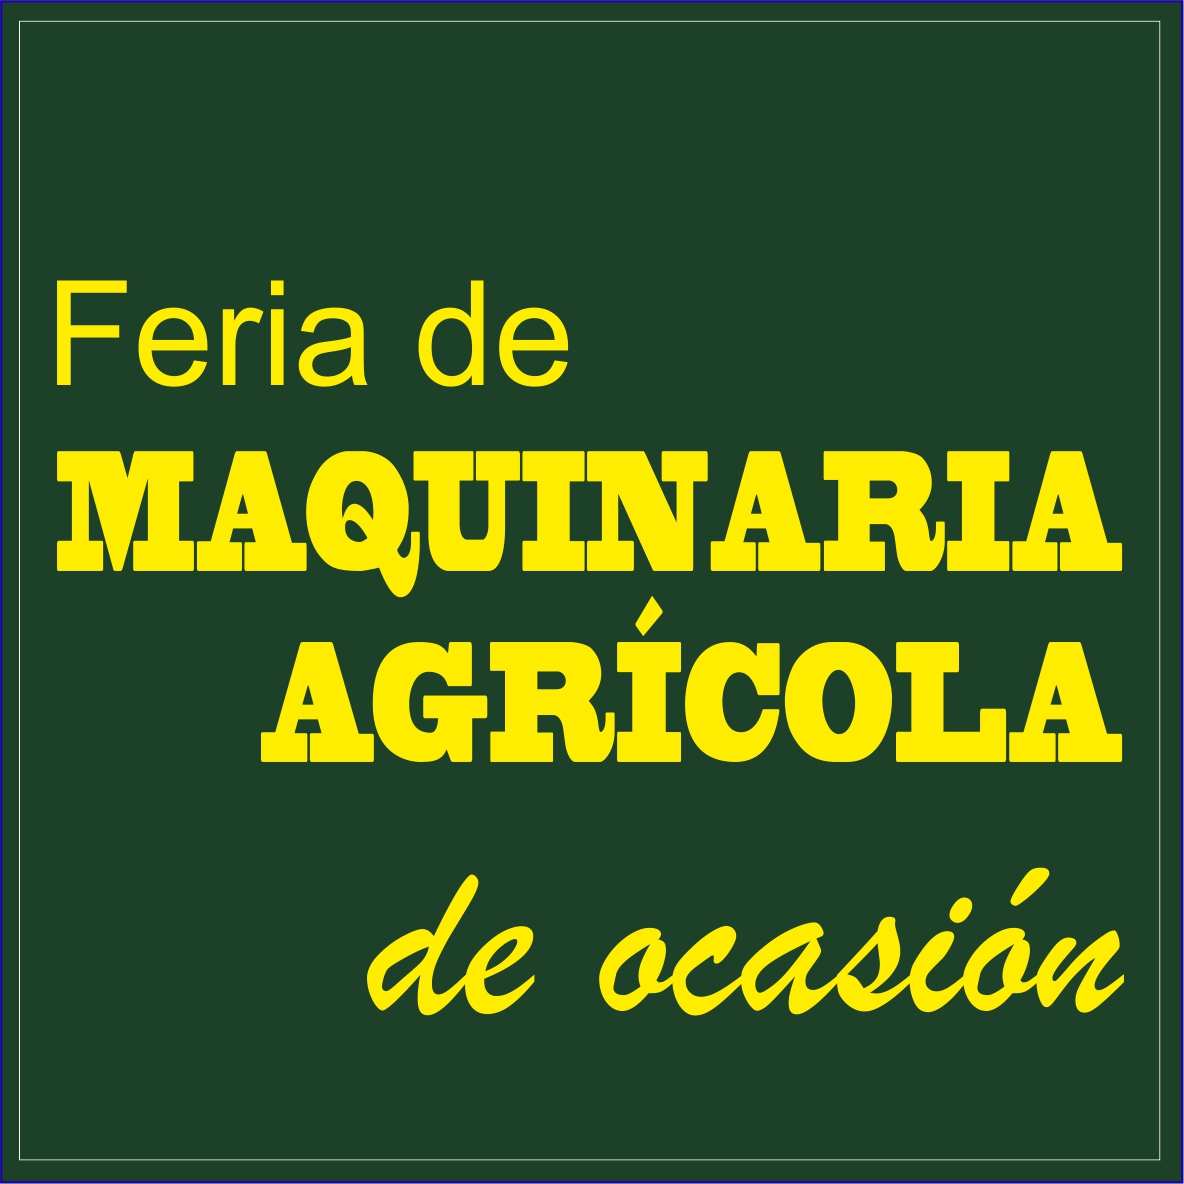 Feria Maquinaria Agricola